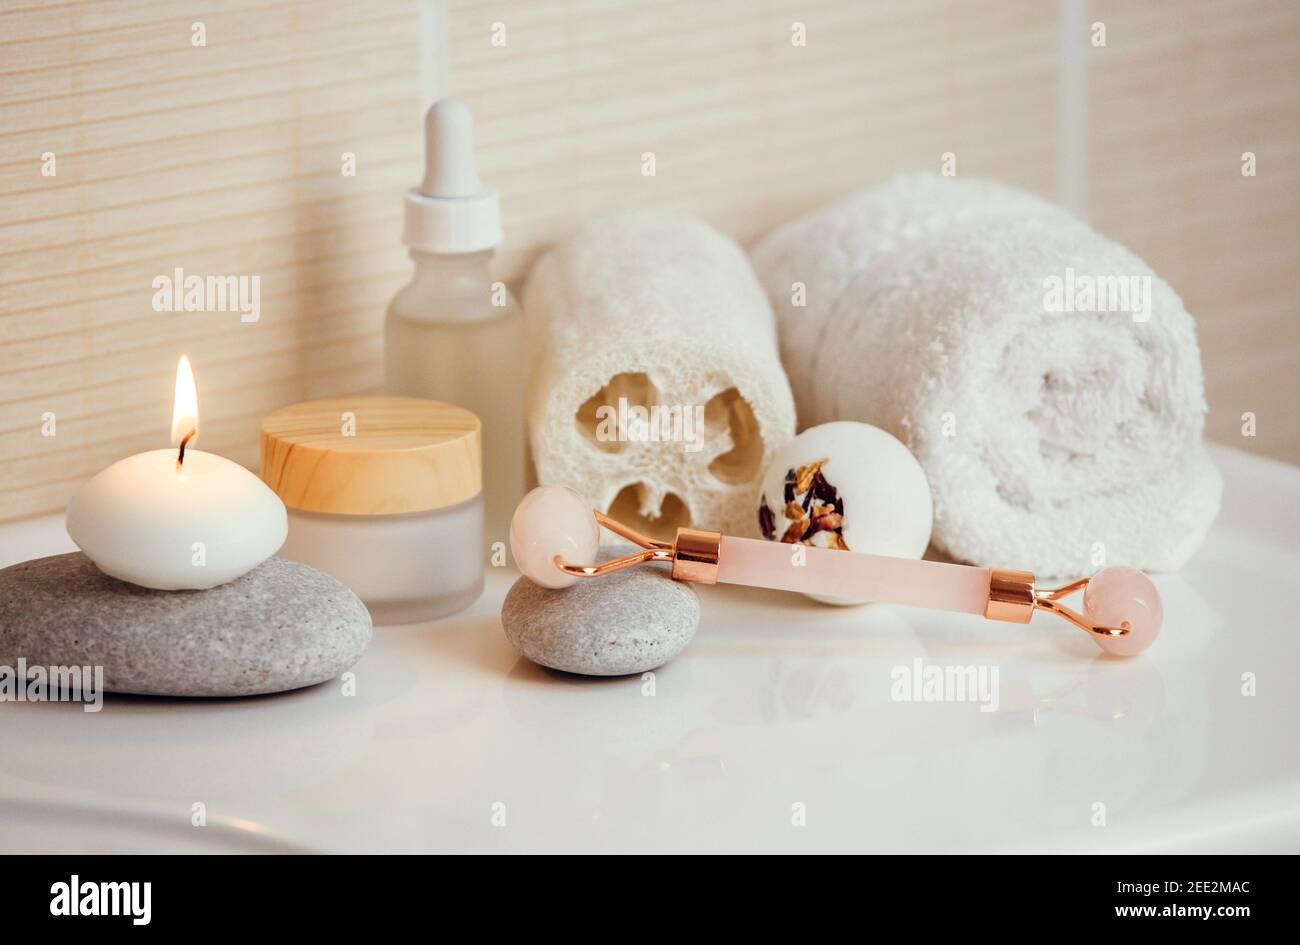 Home SPA-Produkte für die Selbstpflege im Bad, Gesichtsmassage Rollwerkzeug, feuchtigkeitsspendende Cremes und Öl, cremige Bad Bombe mit trockenen Rosenblüten. Stockfoto